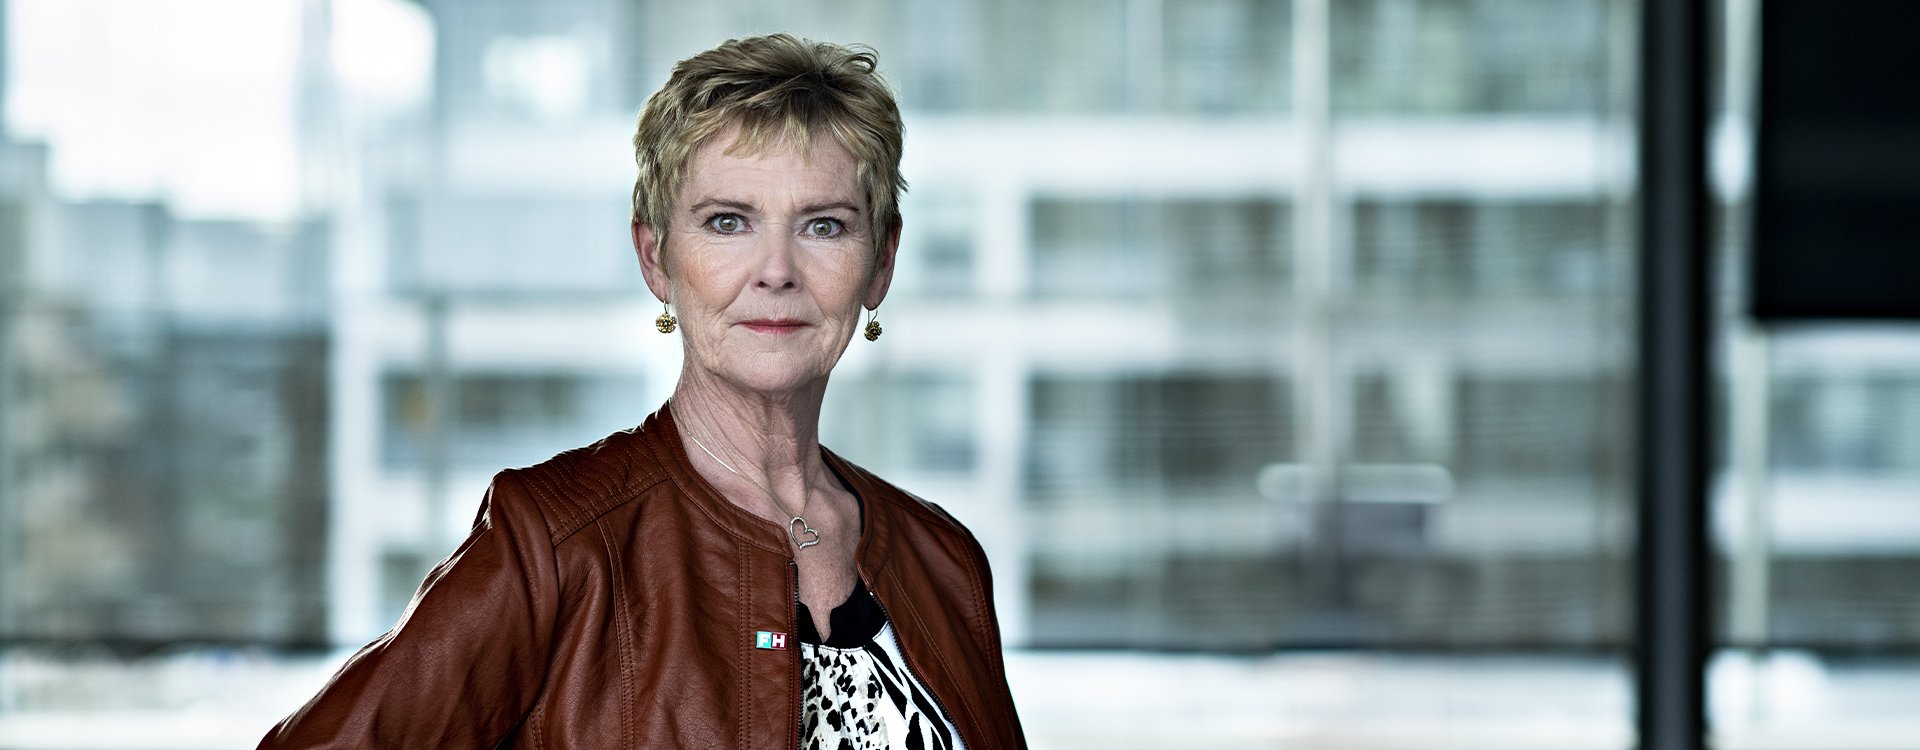 Lizette Risgaard - Formand for fagbevægelsens Hovedorganisation